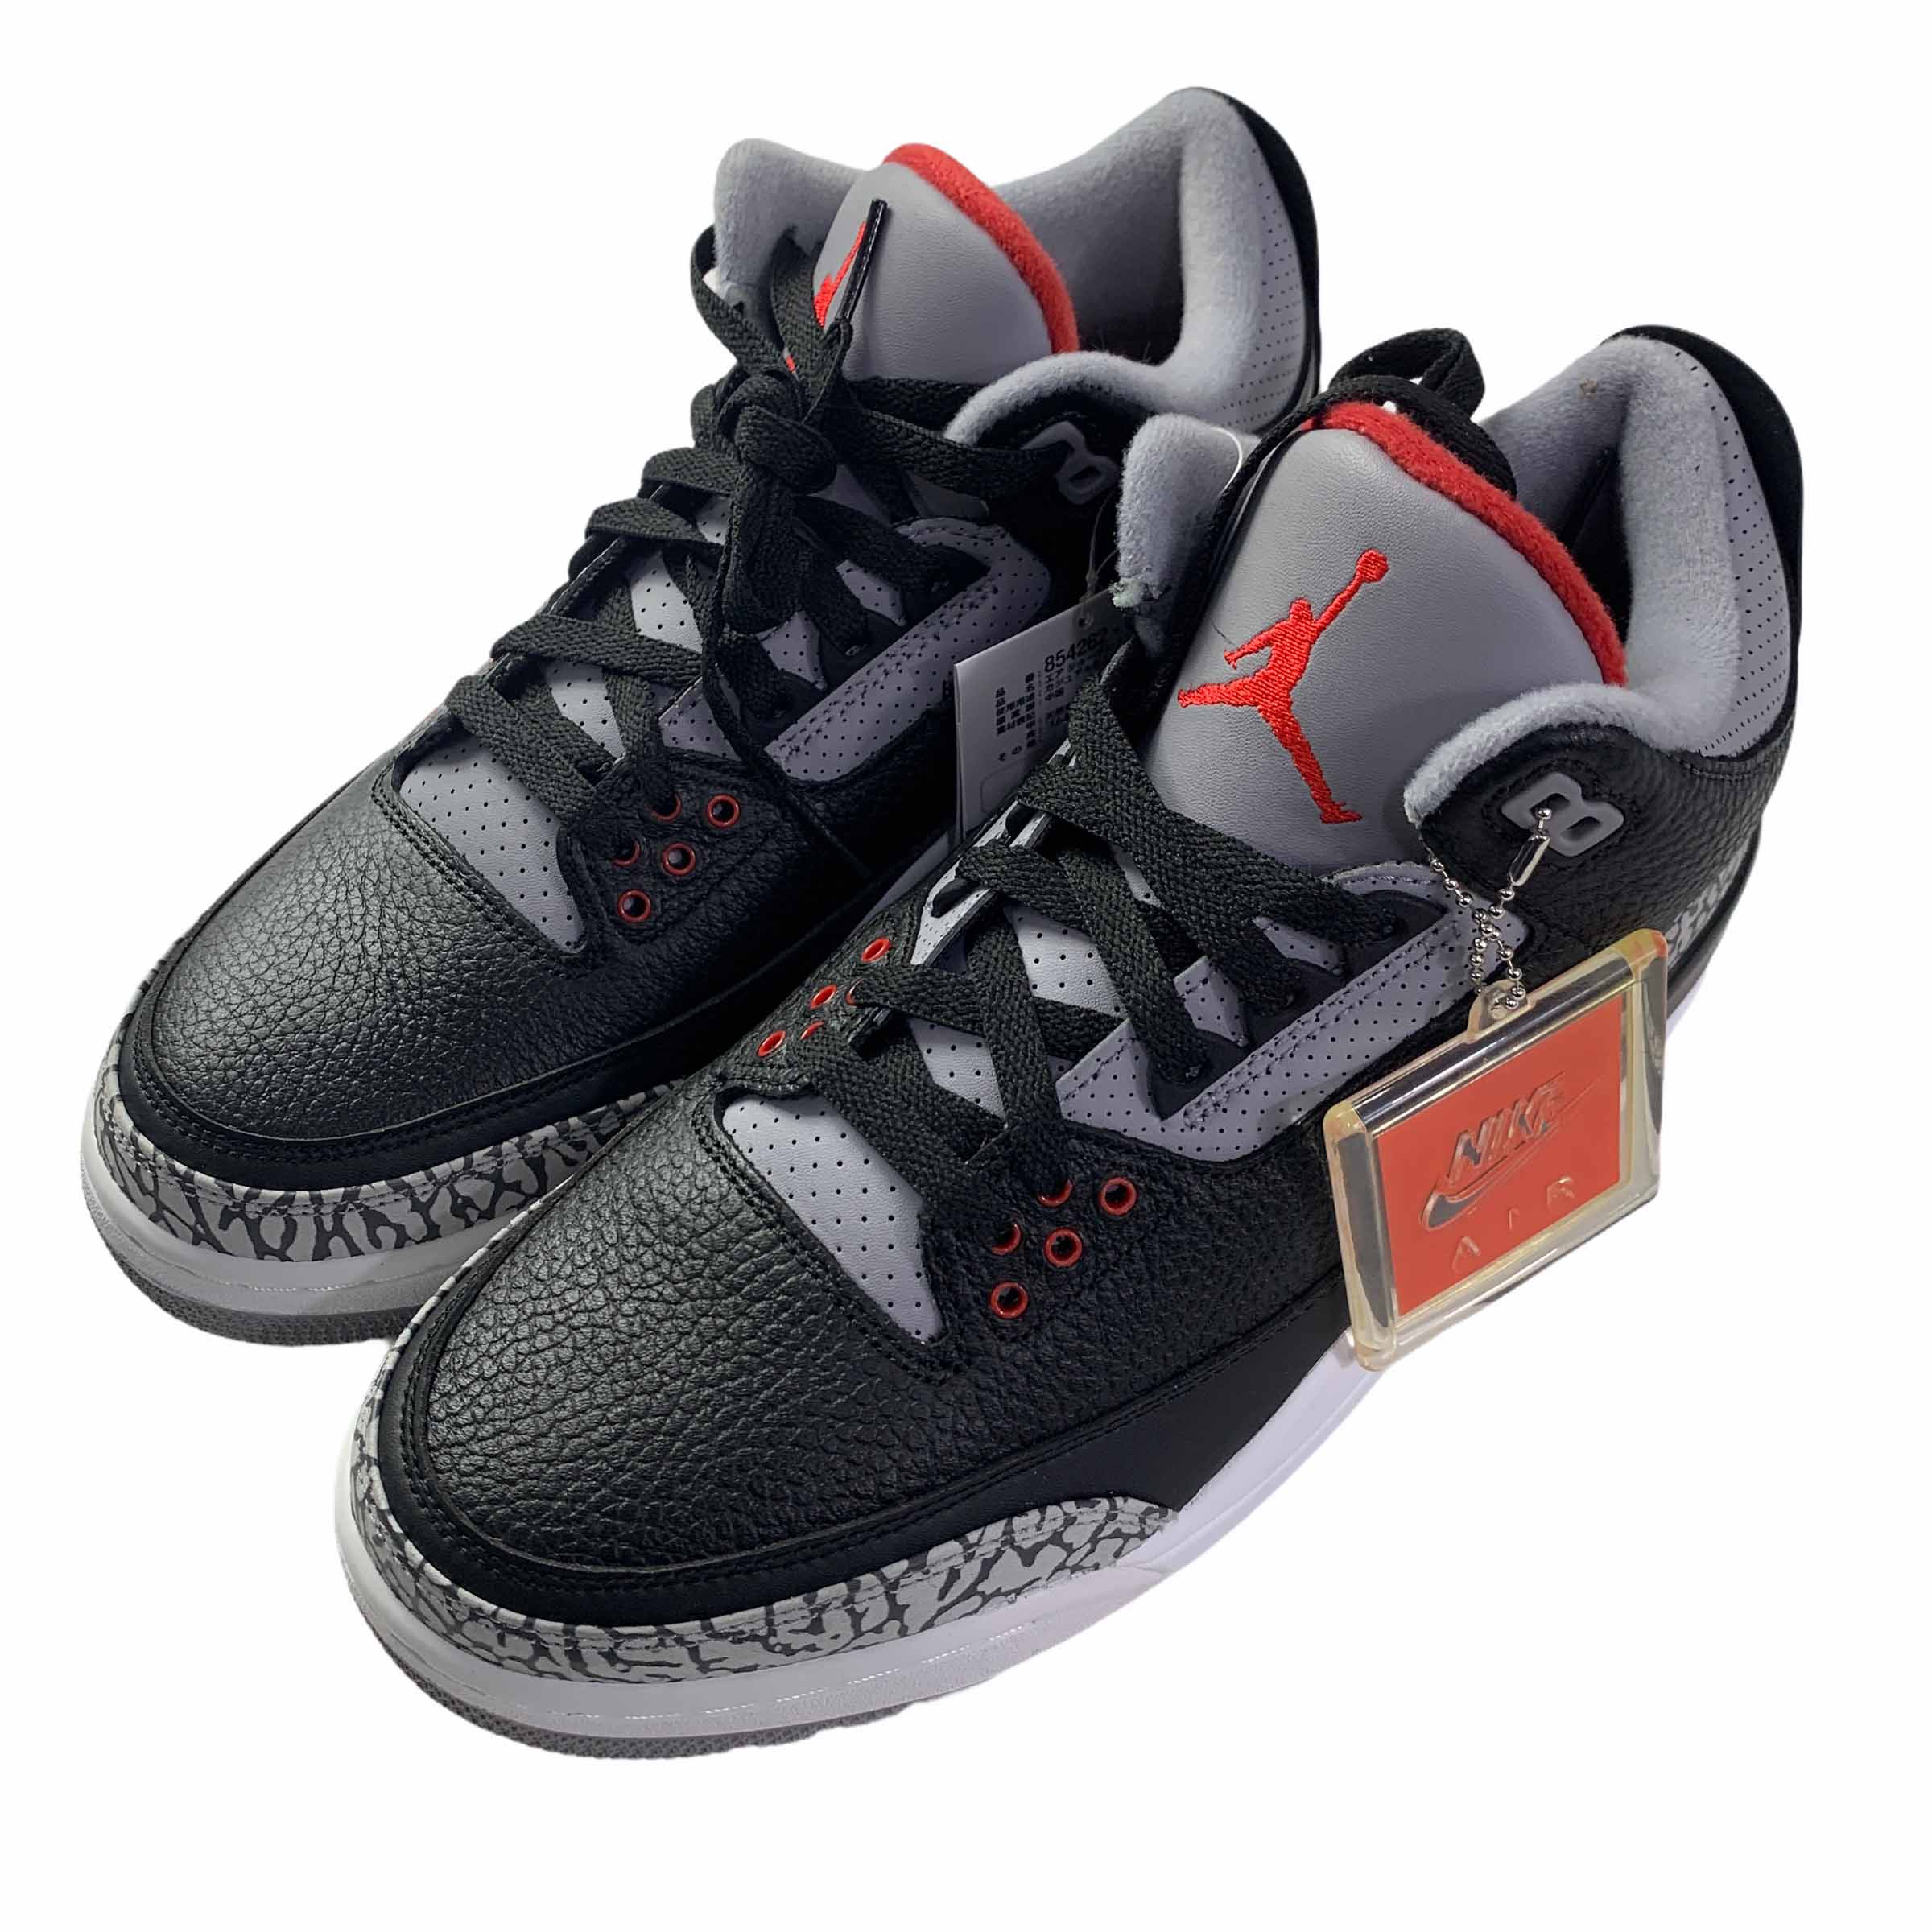 [Nike] Jordan 3 Retro Black Cement - Size US10